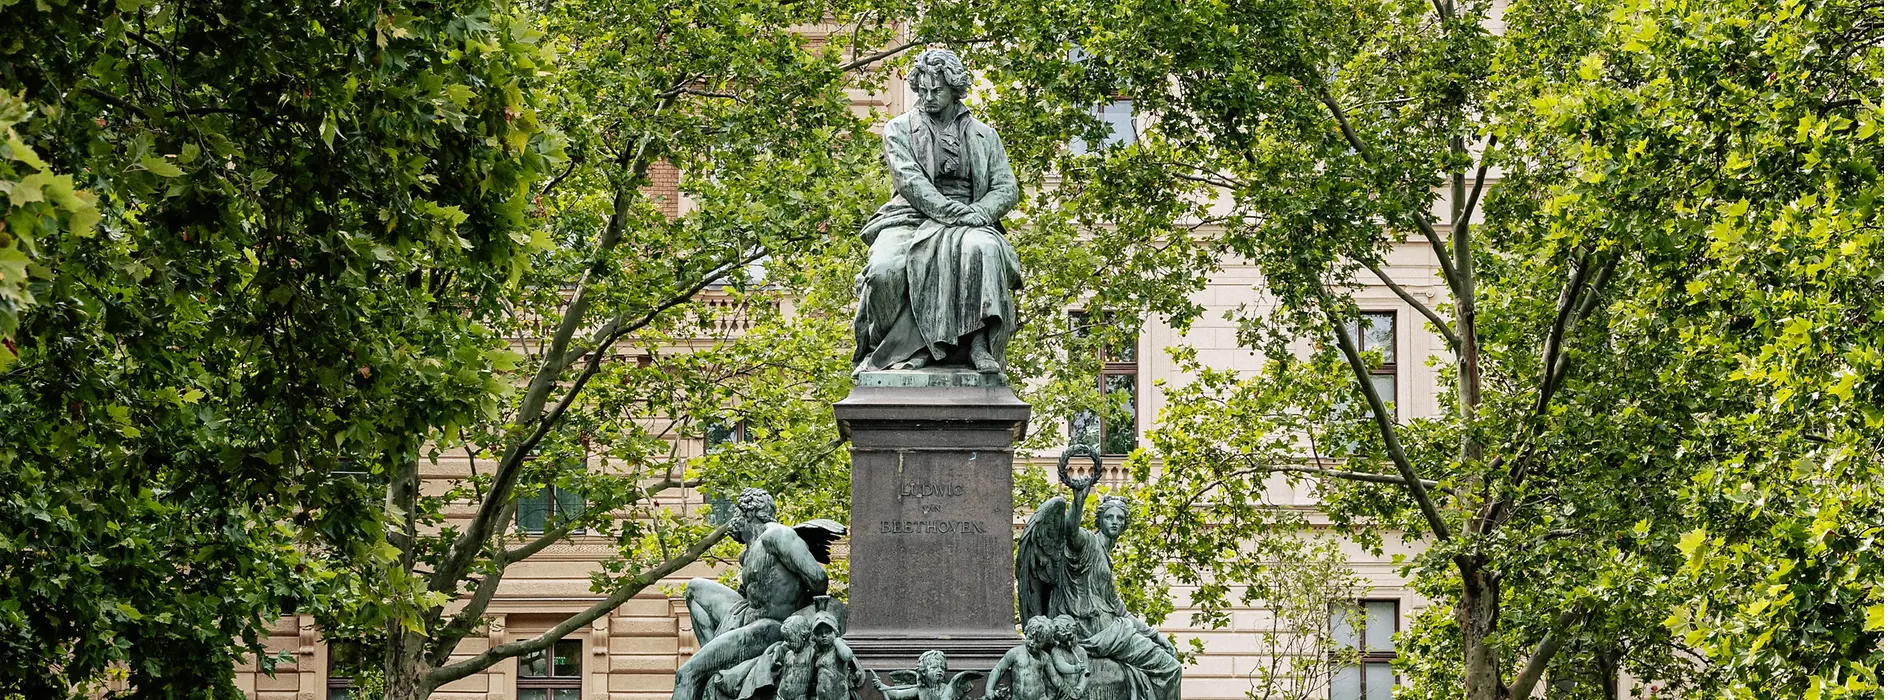 Beethoven-Denkmal am Beethovenplatz